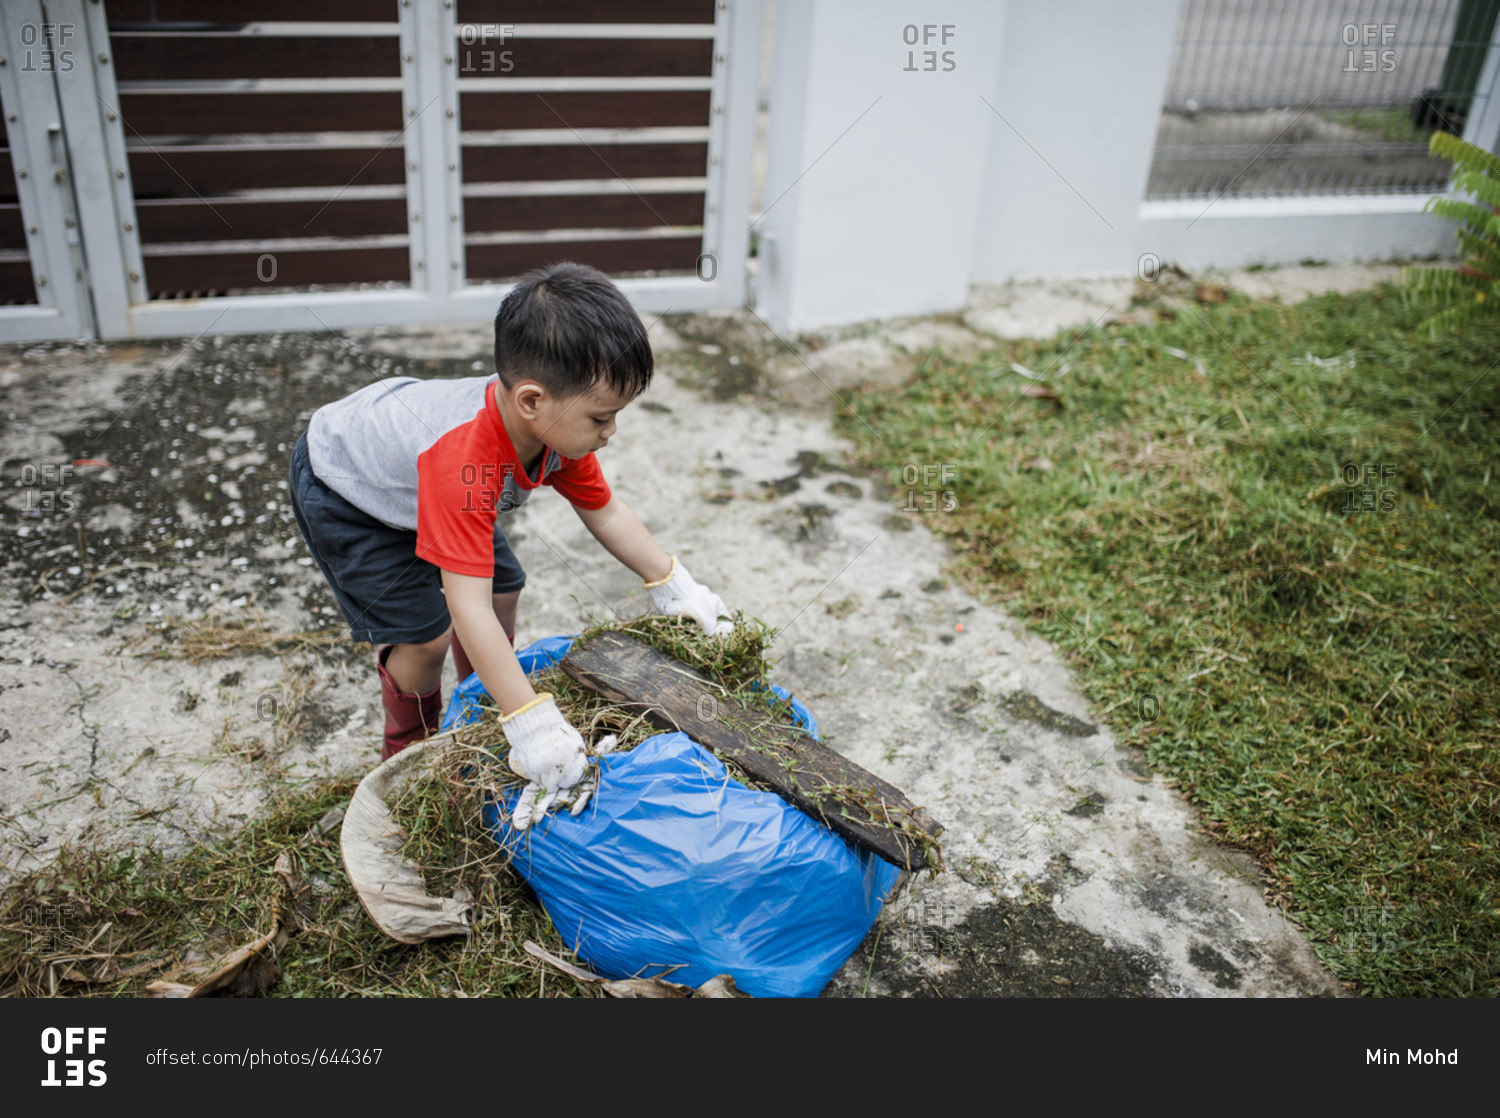 Boy putting yard waste into a blue bag